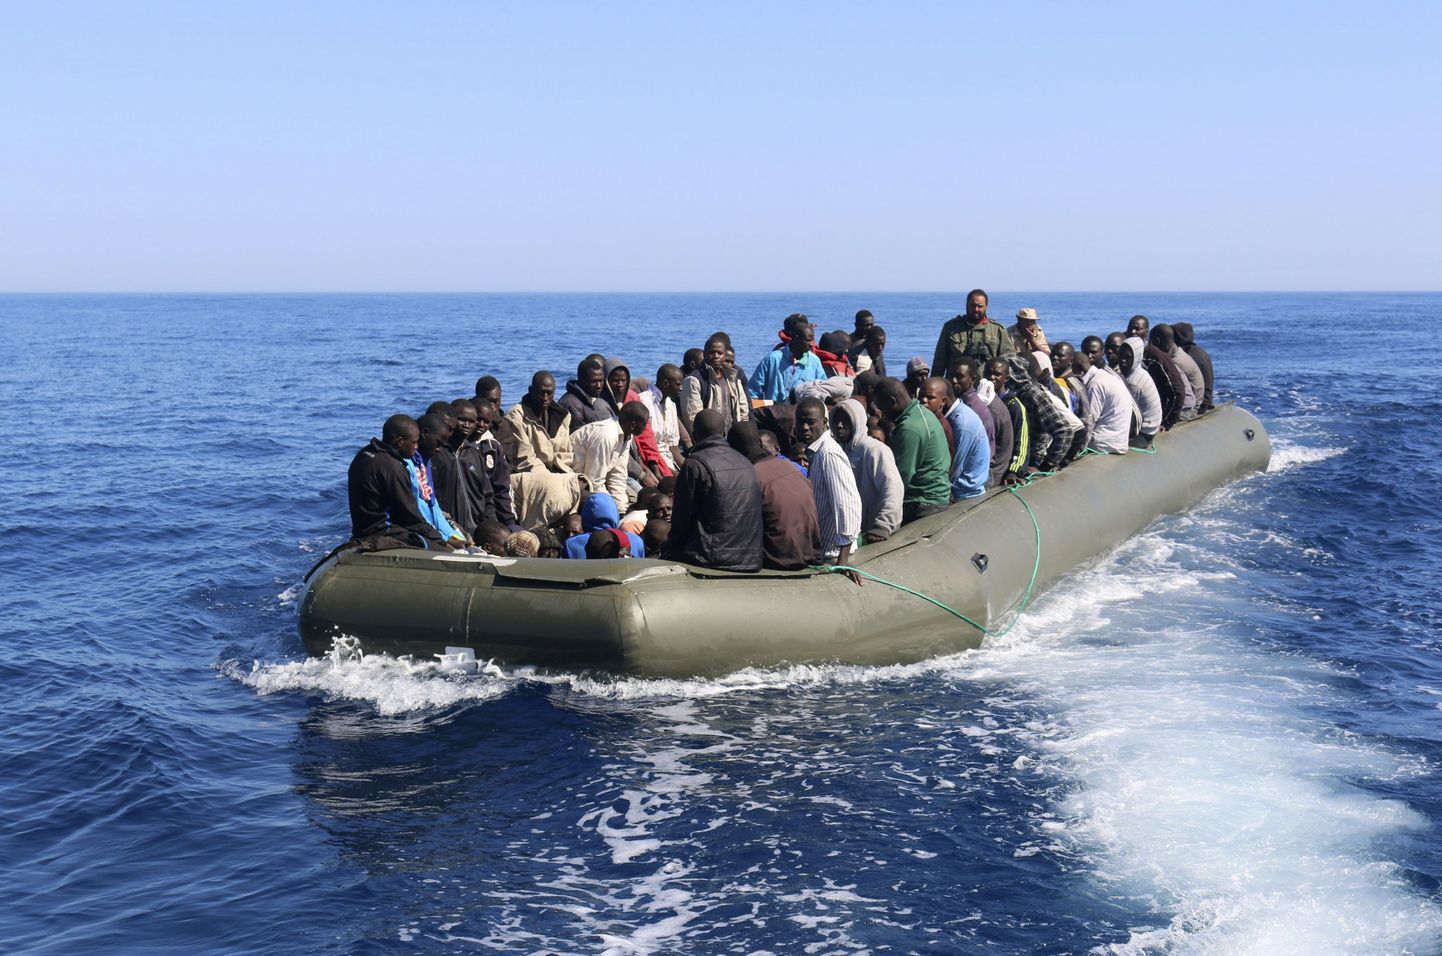 Immigrandid paadiga merel